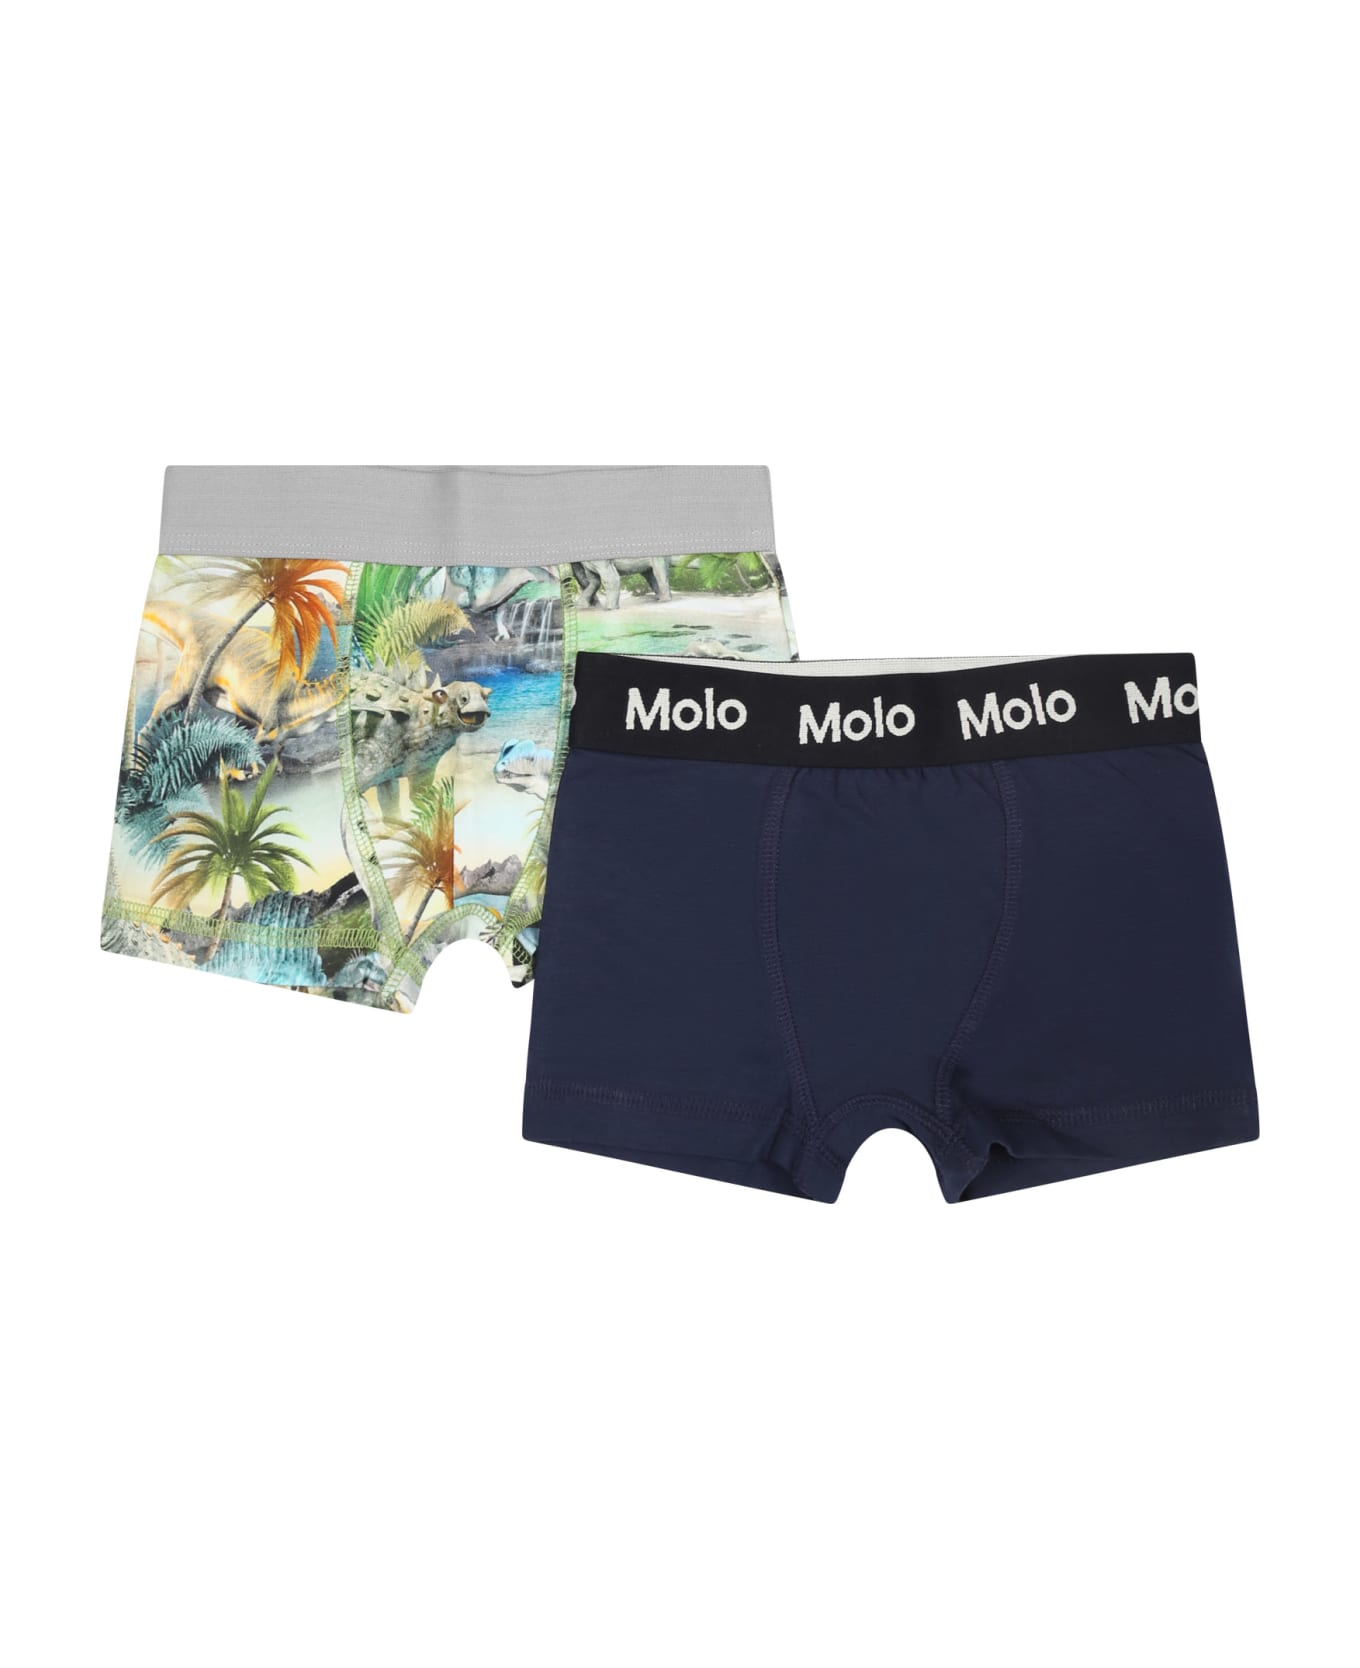 Molo Multicolor Set For Boy With Dinosaur Print - Multicolor アンダーウェア